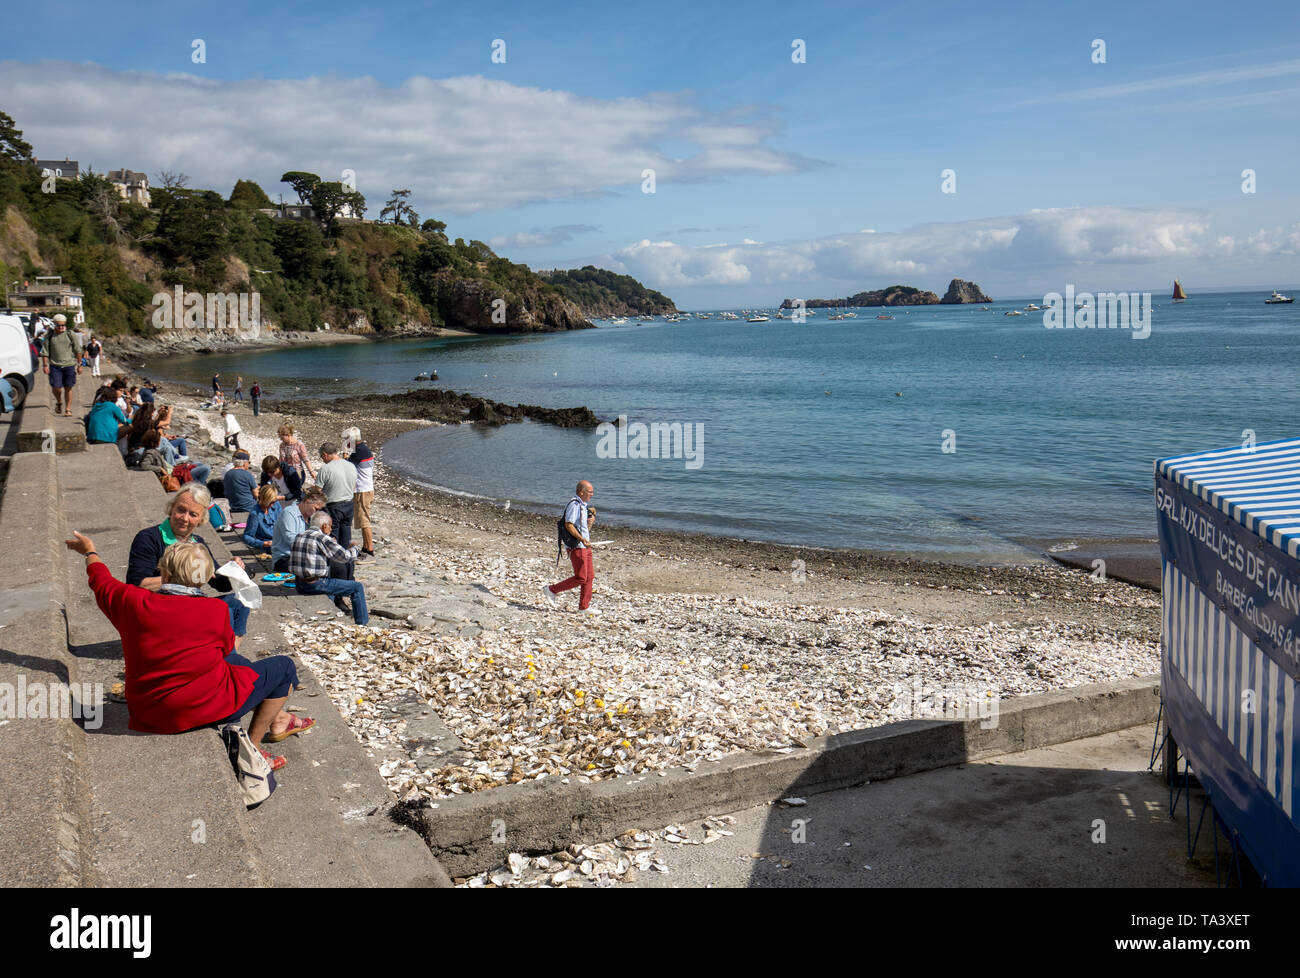 Cancale, Frankreich - 15 September, 2018: Die Menschen essen Austern gekauft an der Küste von Cancale, Bretagne, Frankreich Stockfoto